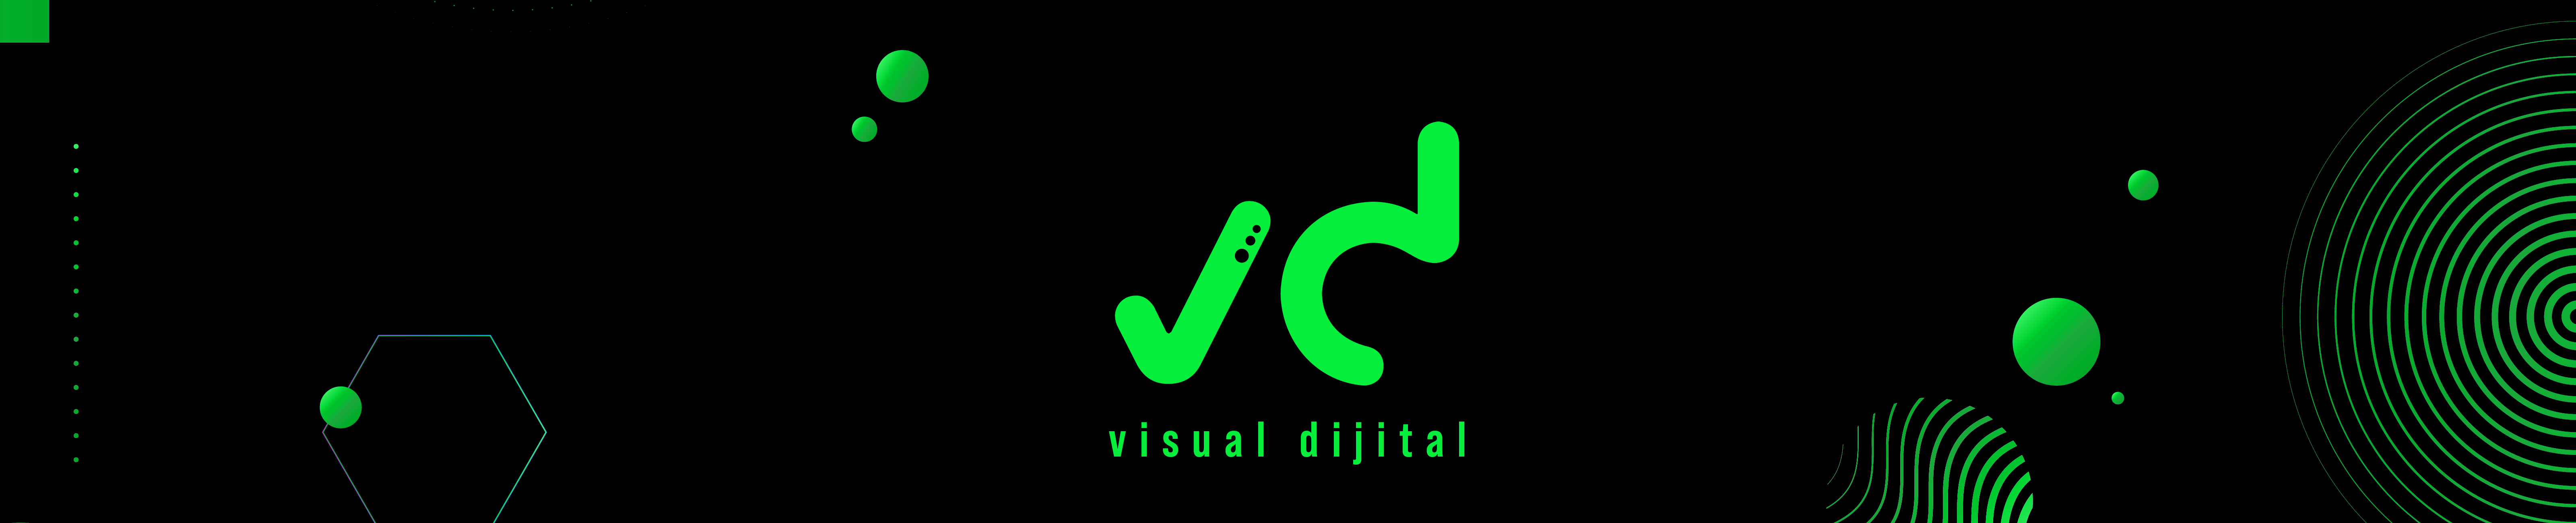 Visual Dijital profil başlığı